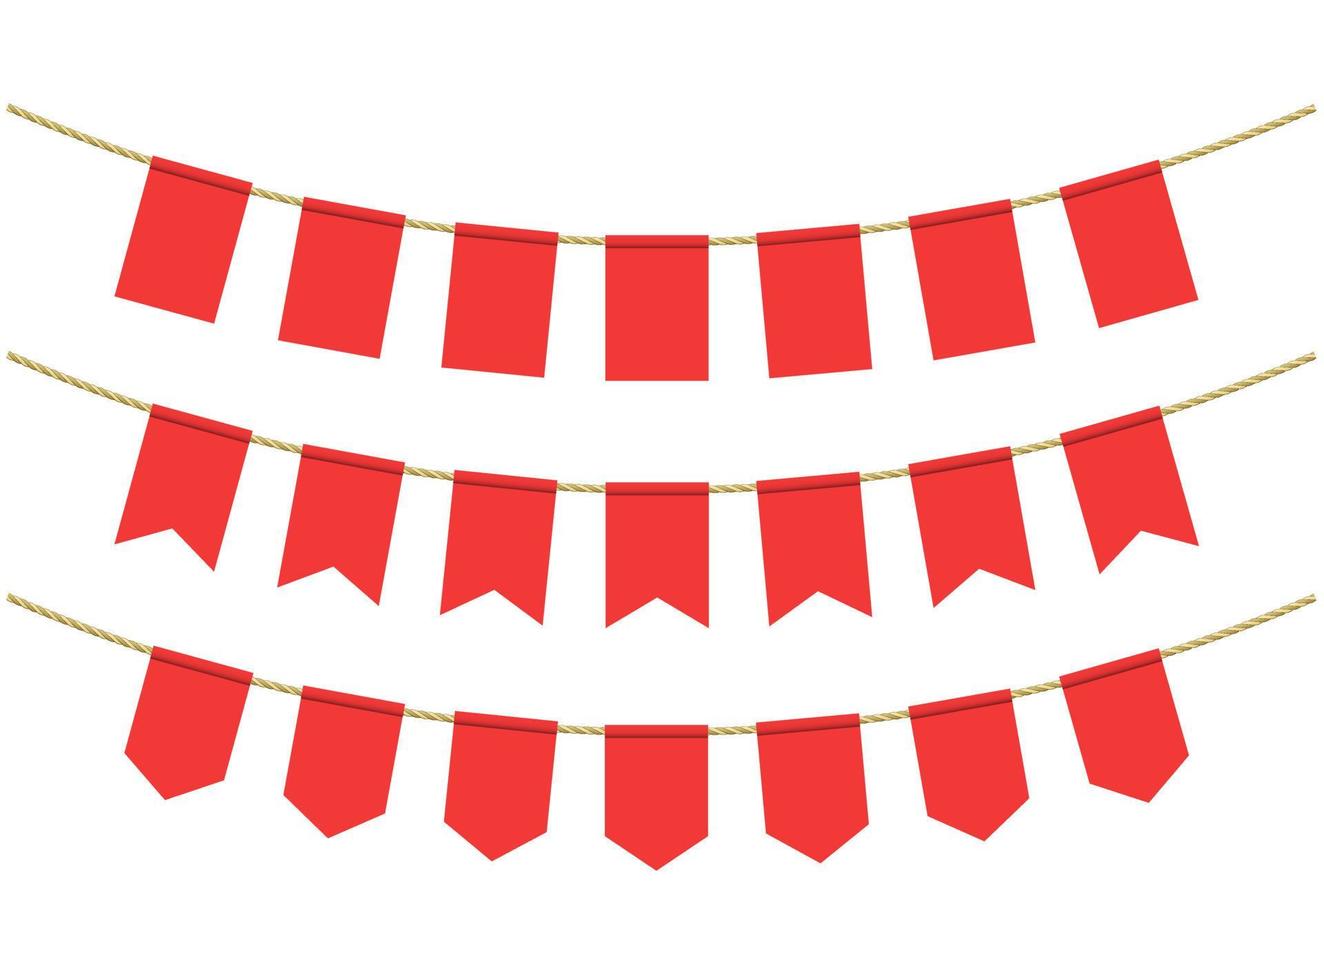 rode vlaggen voor decoratie op een witte achtergrond. vlaggen aan de touwen vector